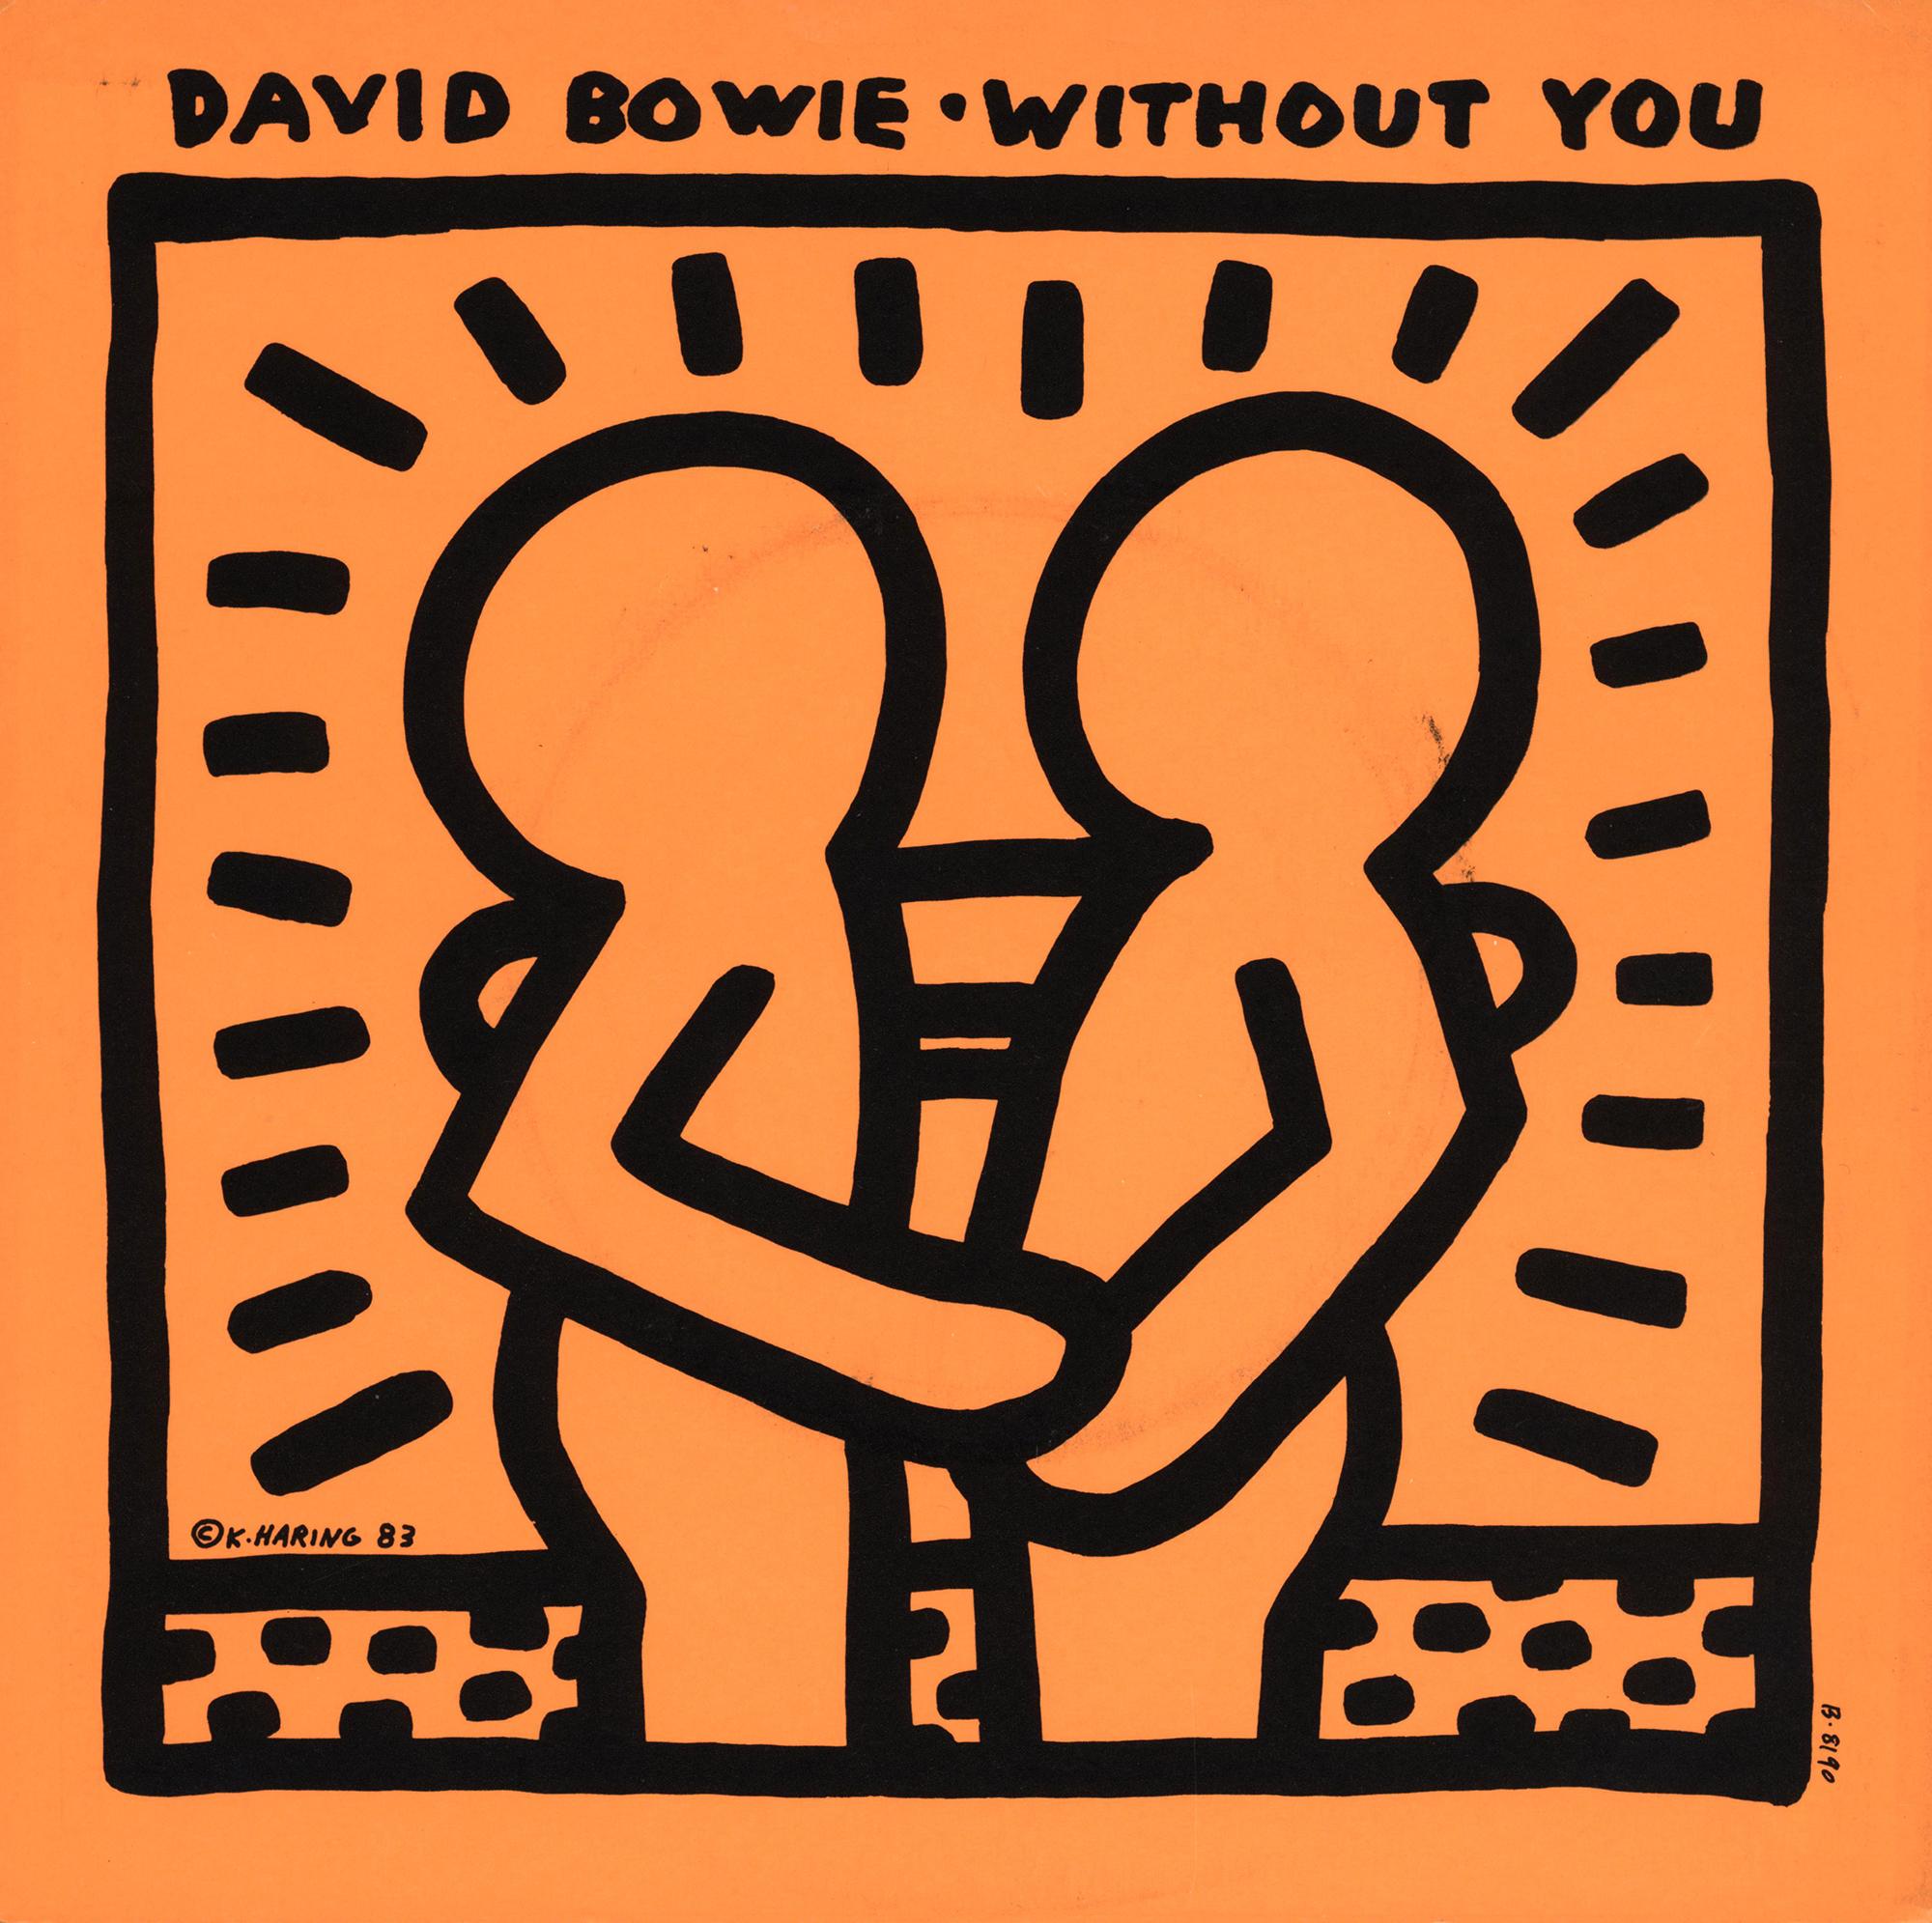 Art du disque Keith Haring des années 1980 :
David BOWIE "Without You" Une pochette vinyle rare et très recherchée avec la pochette originale de Keith Haring.

Année : 1983.

Moyen d'expression : Lithographie Off-Set.

Dimensions : 7 x 7